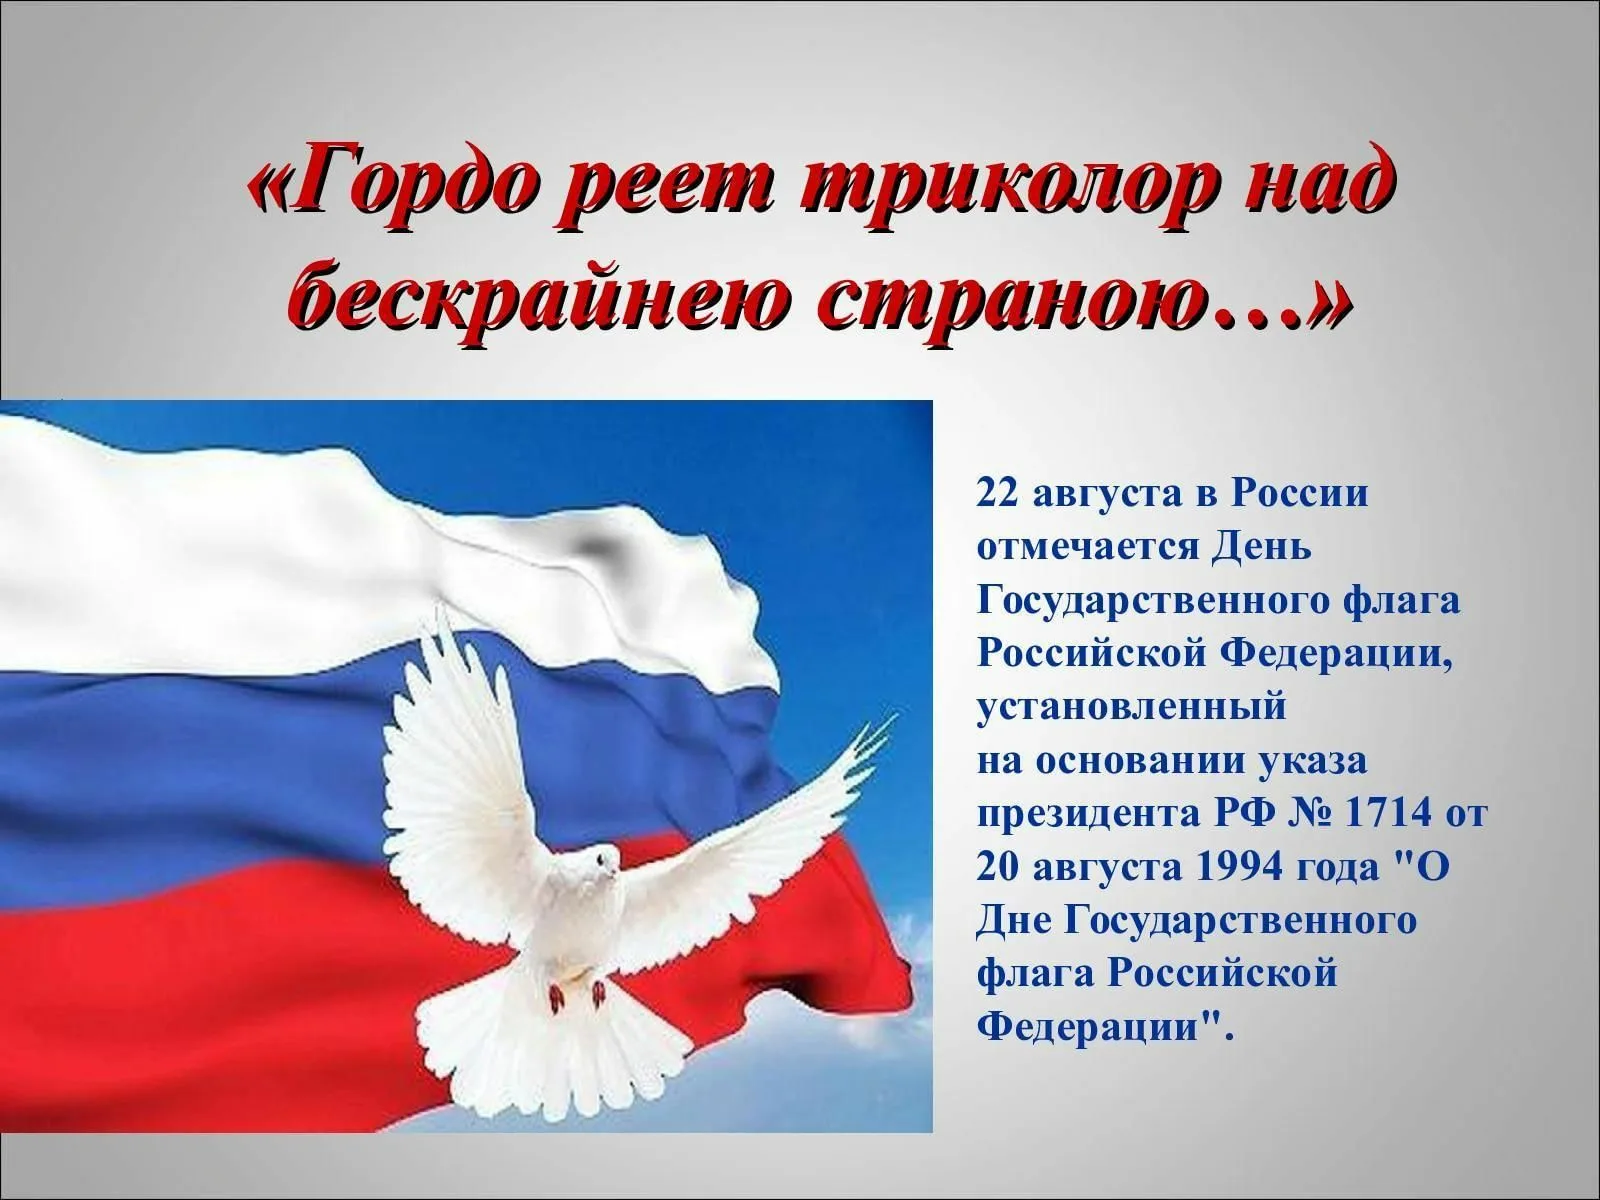 22 августа отмечается день флага. Гордо реет флаг России. День государственного флага России. Реющий флаг России. Гордо реет Триколор.